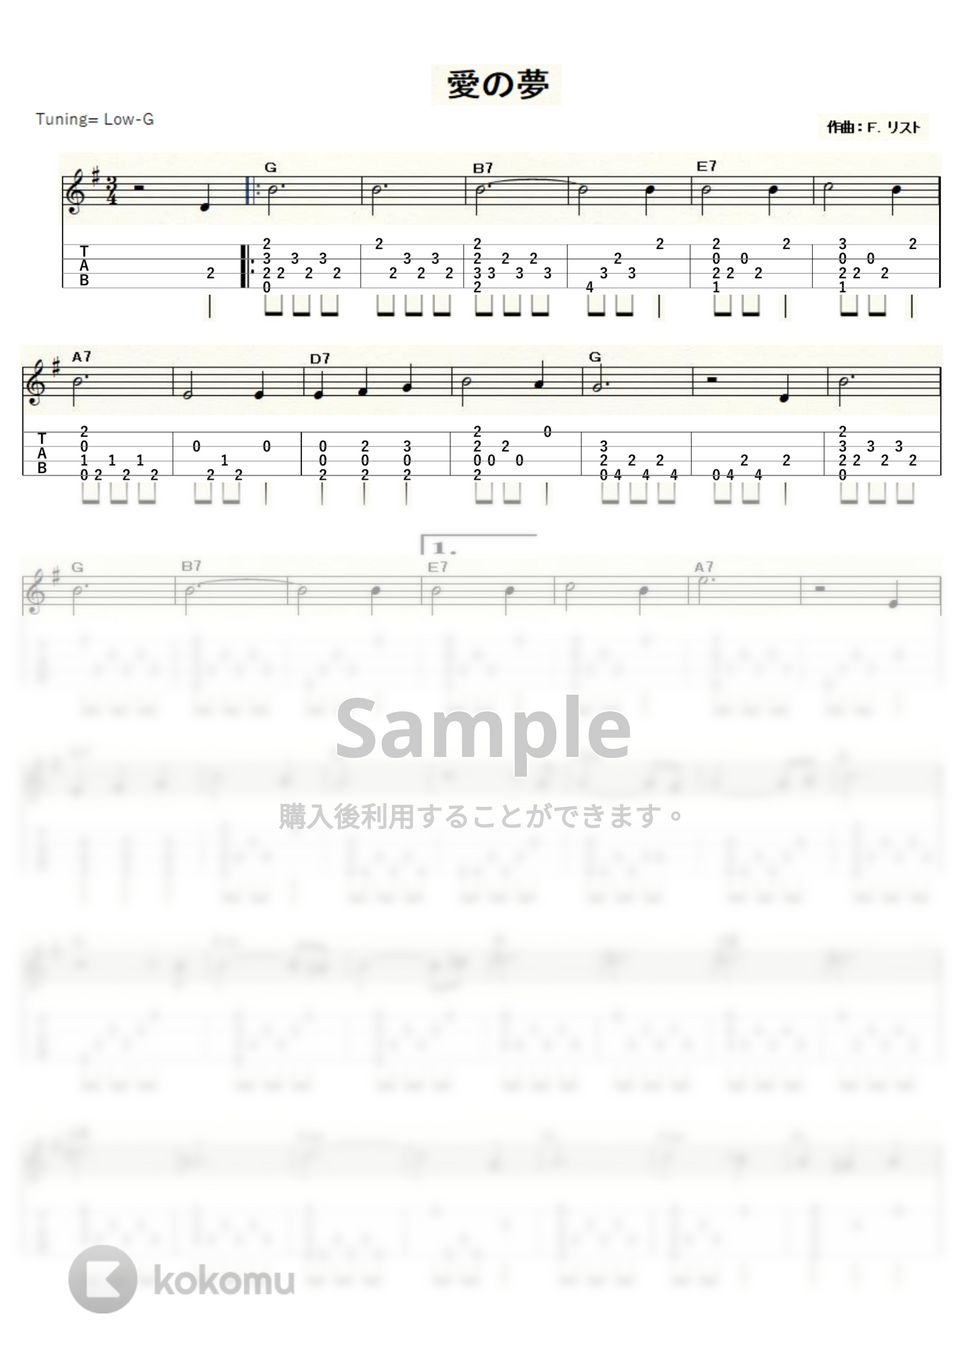 リスト - 愛の夢 (ｳｸﾚﾚｿﾛ / Low-G / 中級) by ukulelepapa